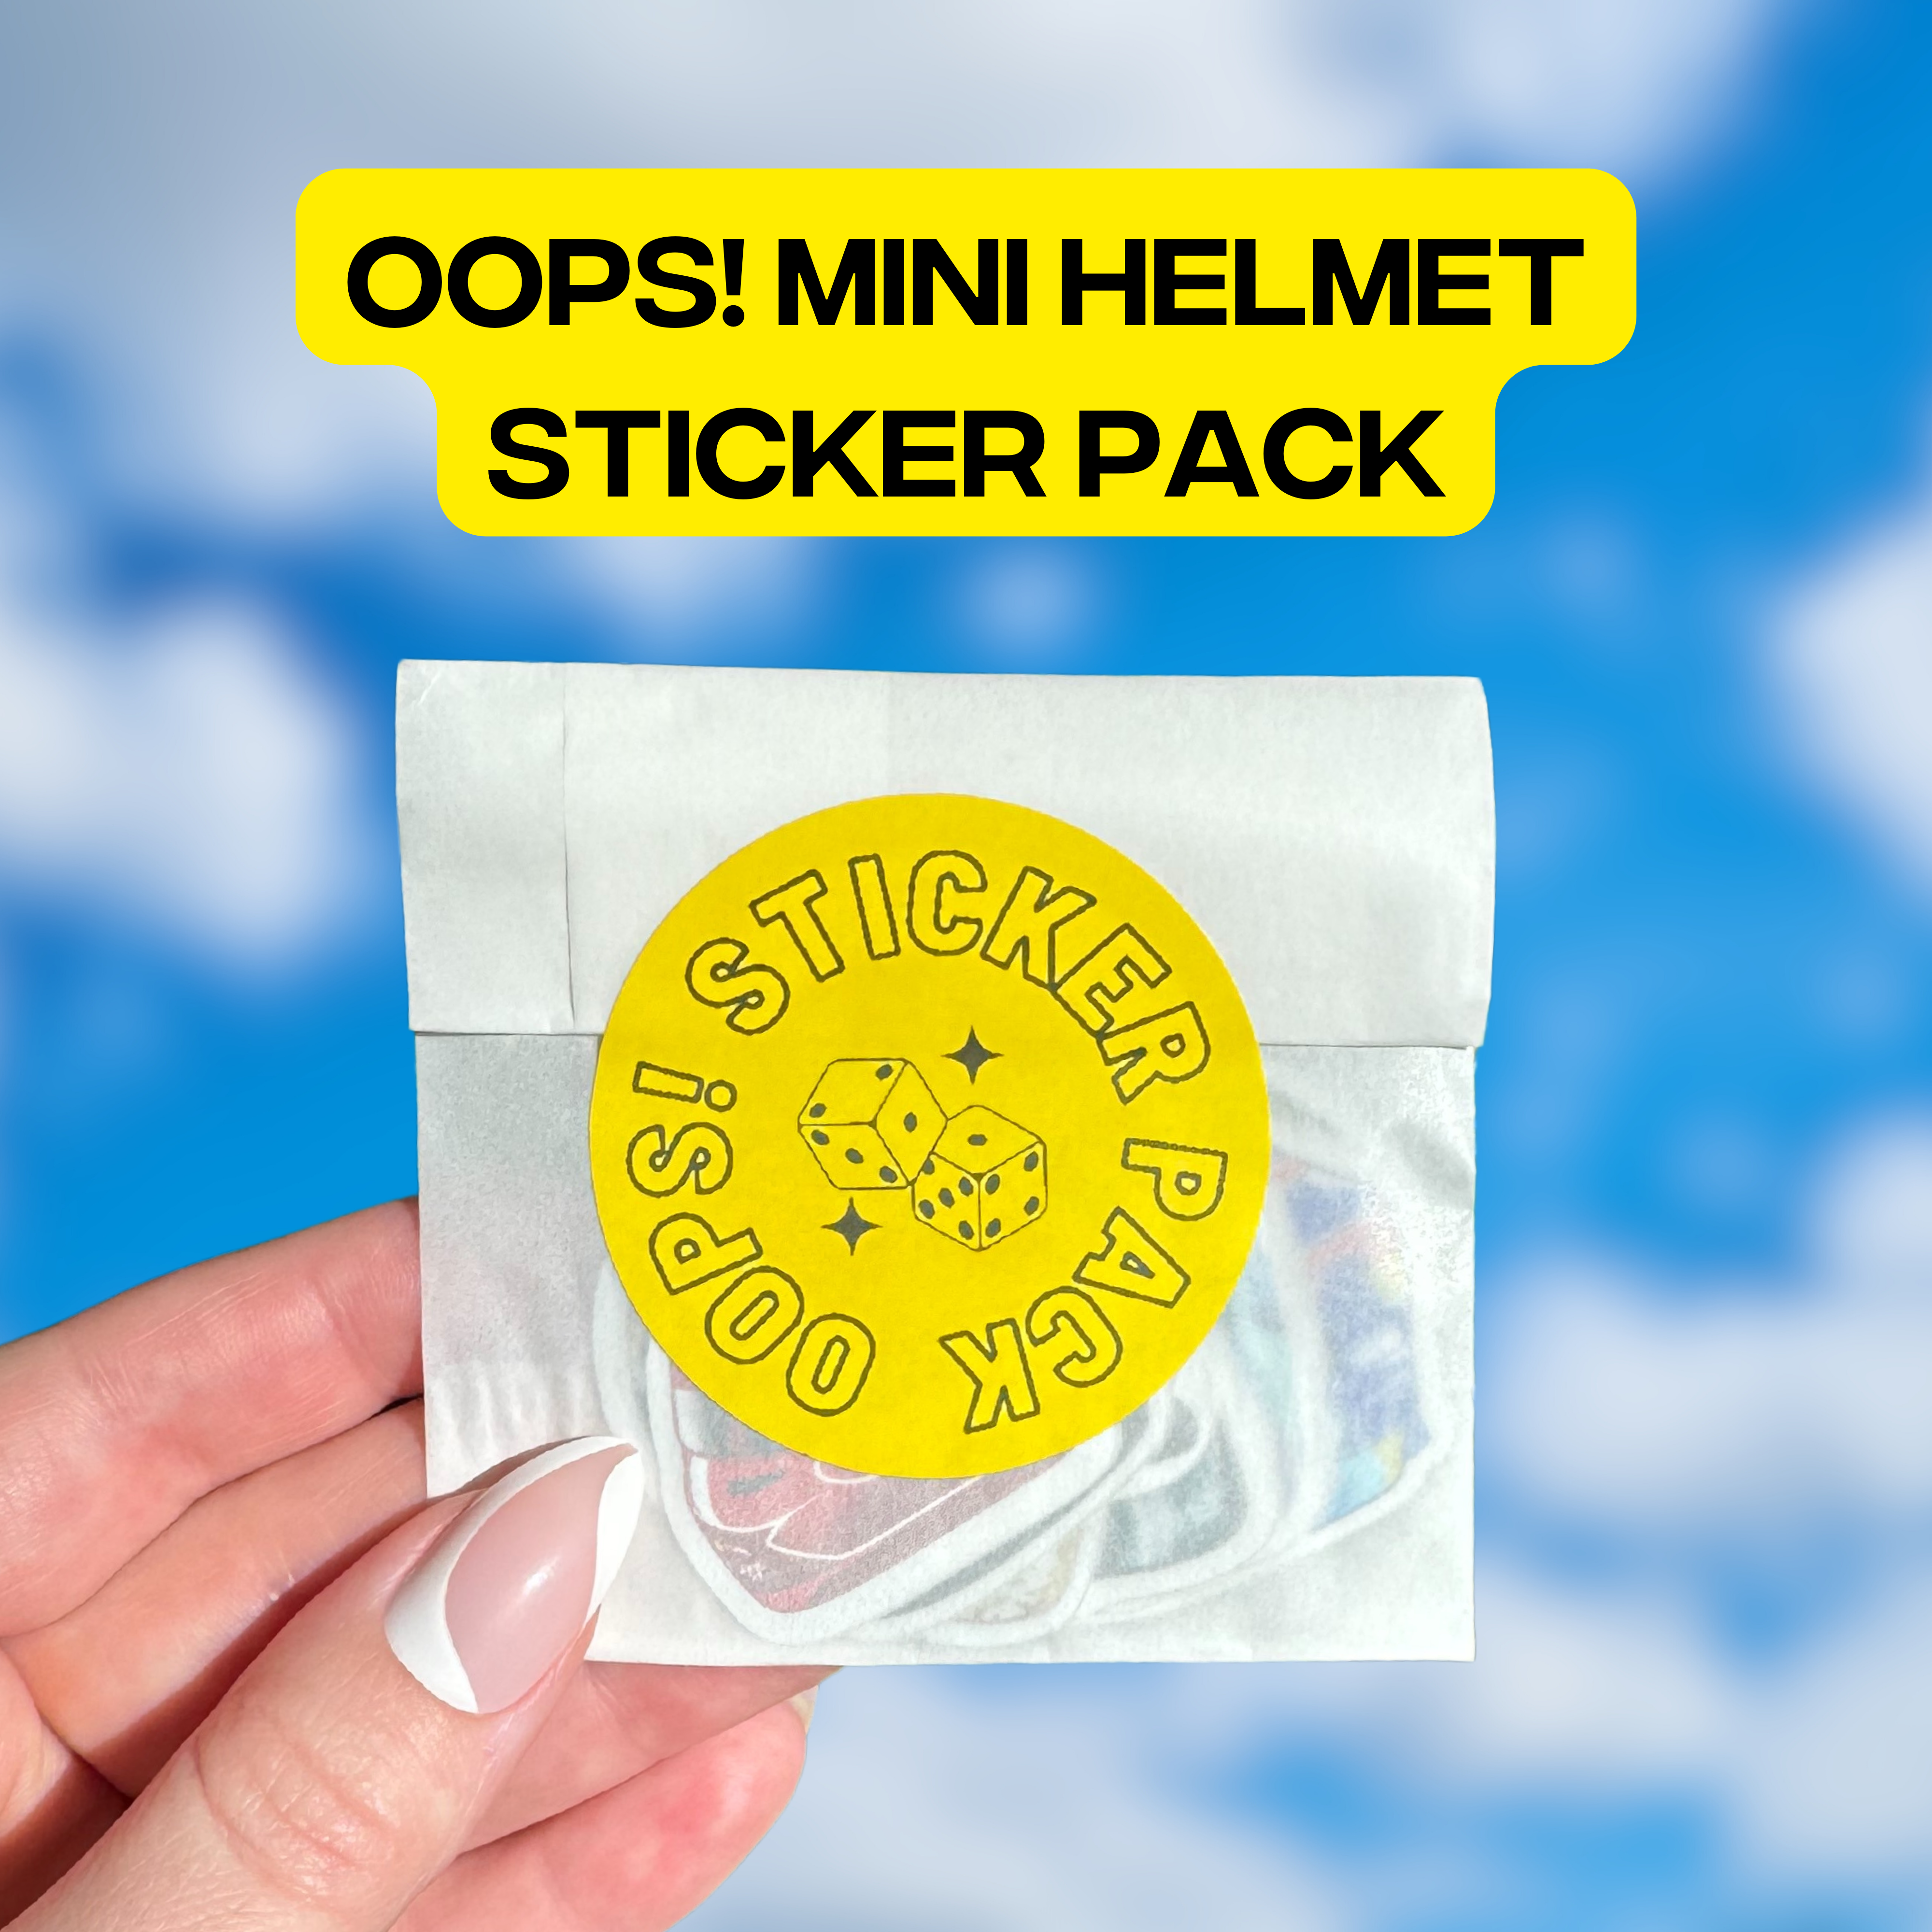 Oops! Mini Helmet sticker pack